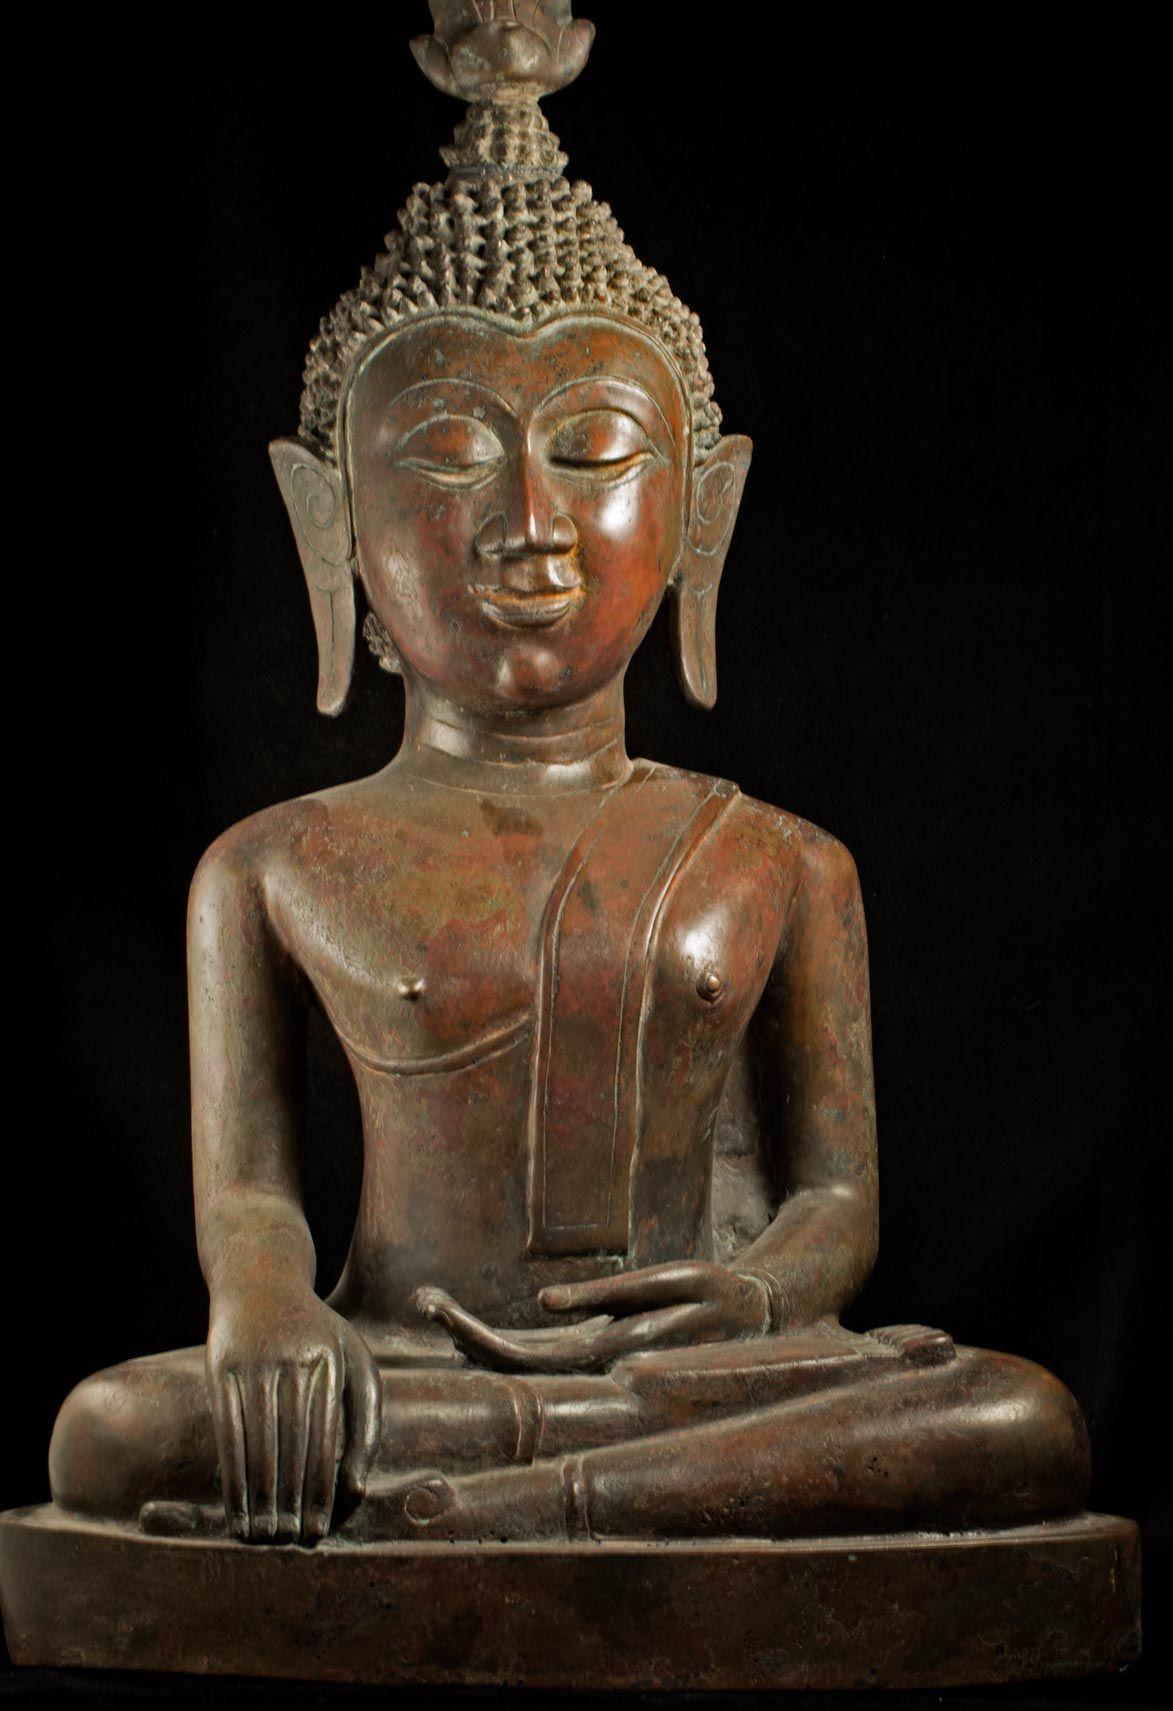 Coup de cœur personnel - Originaire du royaume de Nan, dans le nord-est de la Thaïlande, ce grand Bouddha spécial du 18/19ème siècle dégage une exubérance joyeuse comme peu d'autres. Sa tête extrêmement large lui donne une apparence d'enfant. Mesure